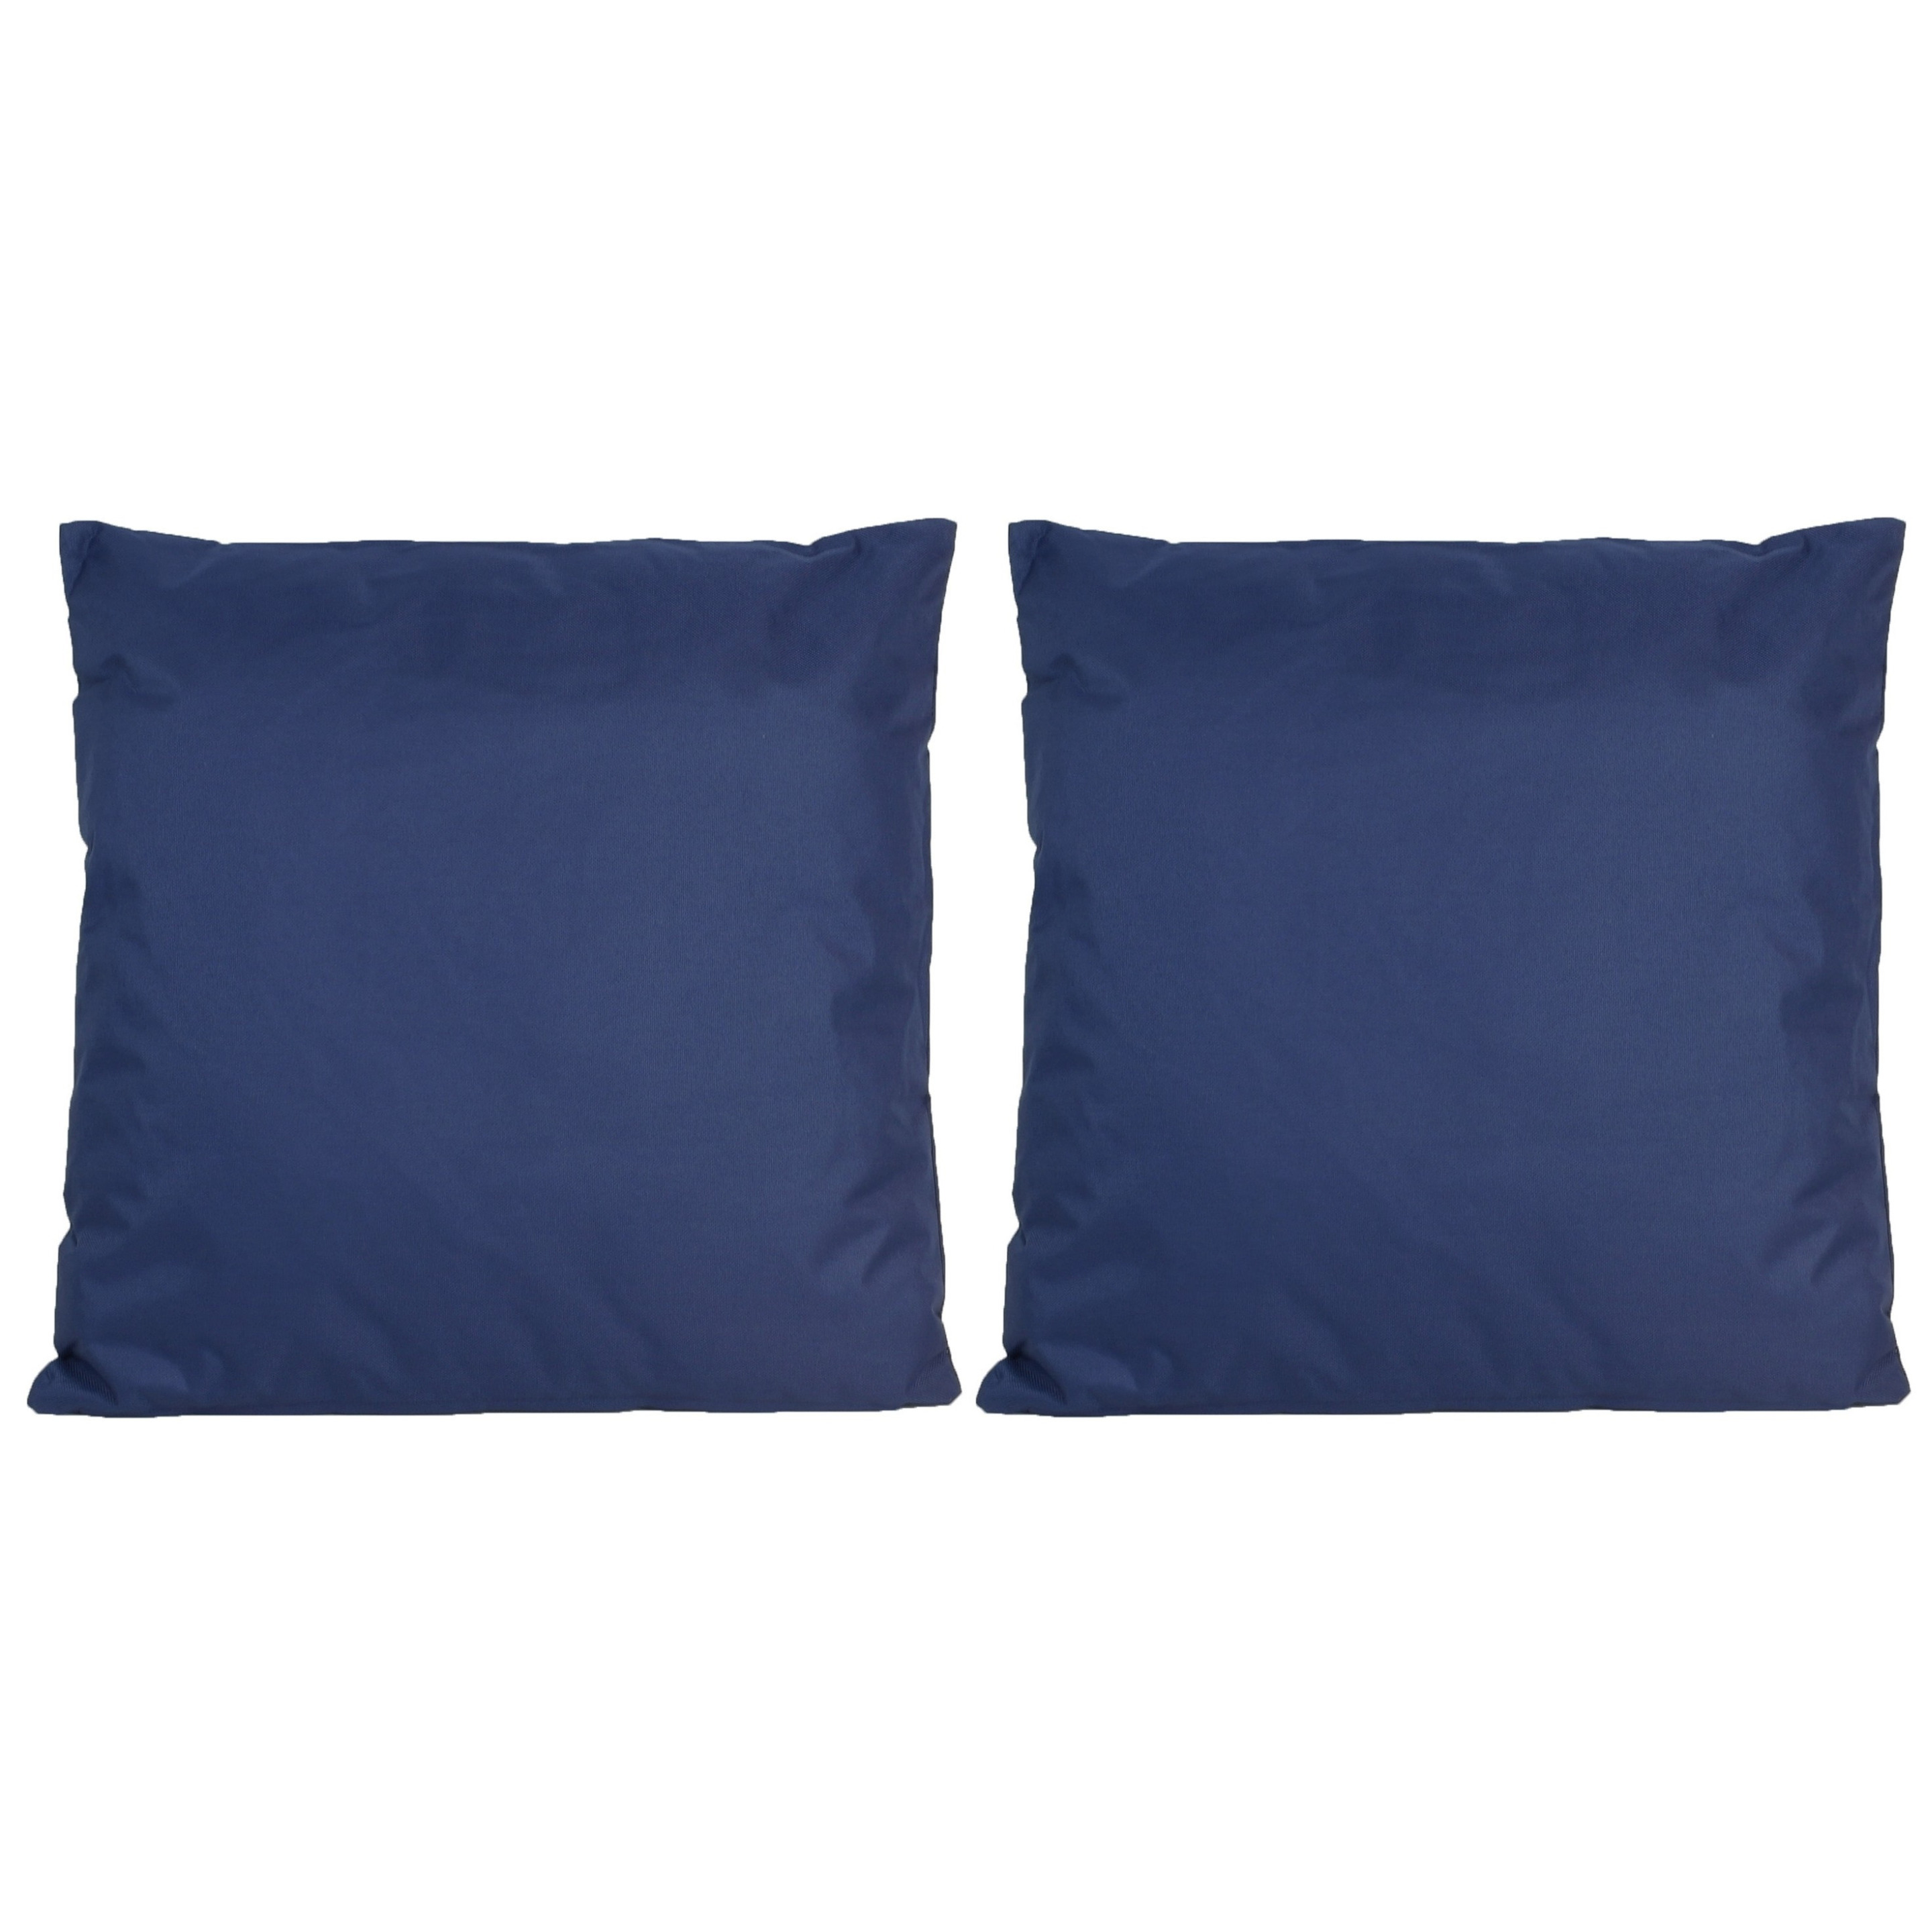 8x Bank-sier kussens voor binnen en buiten in de kleur donkerblauw 45 x 45 cm